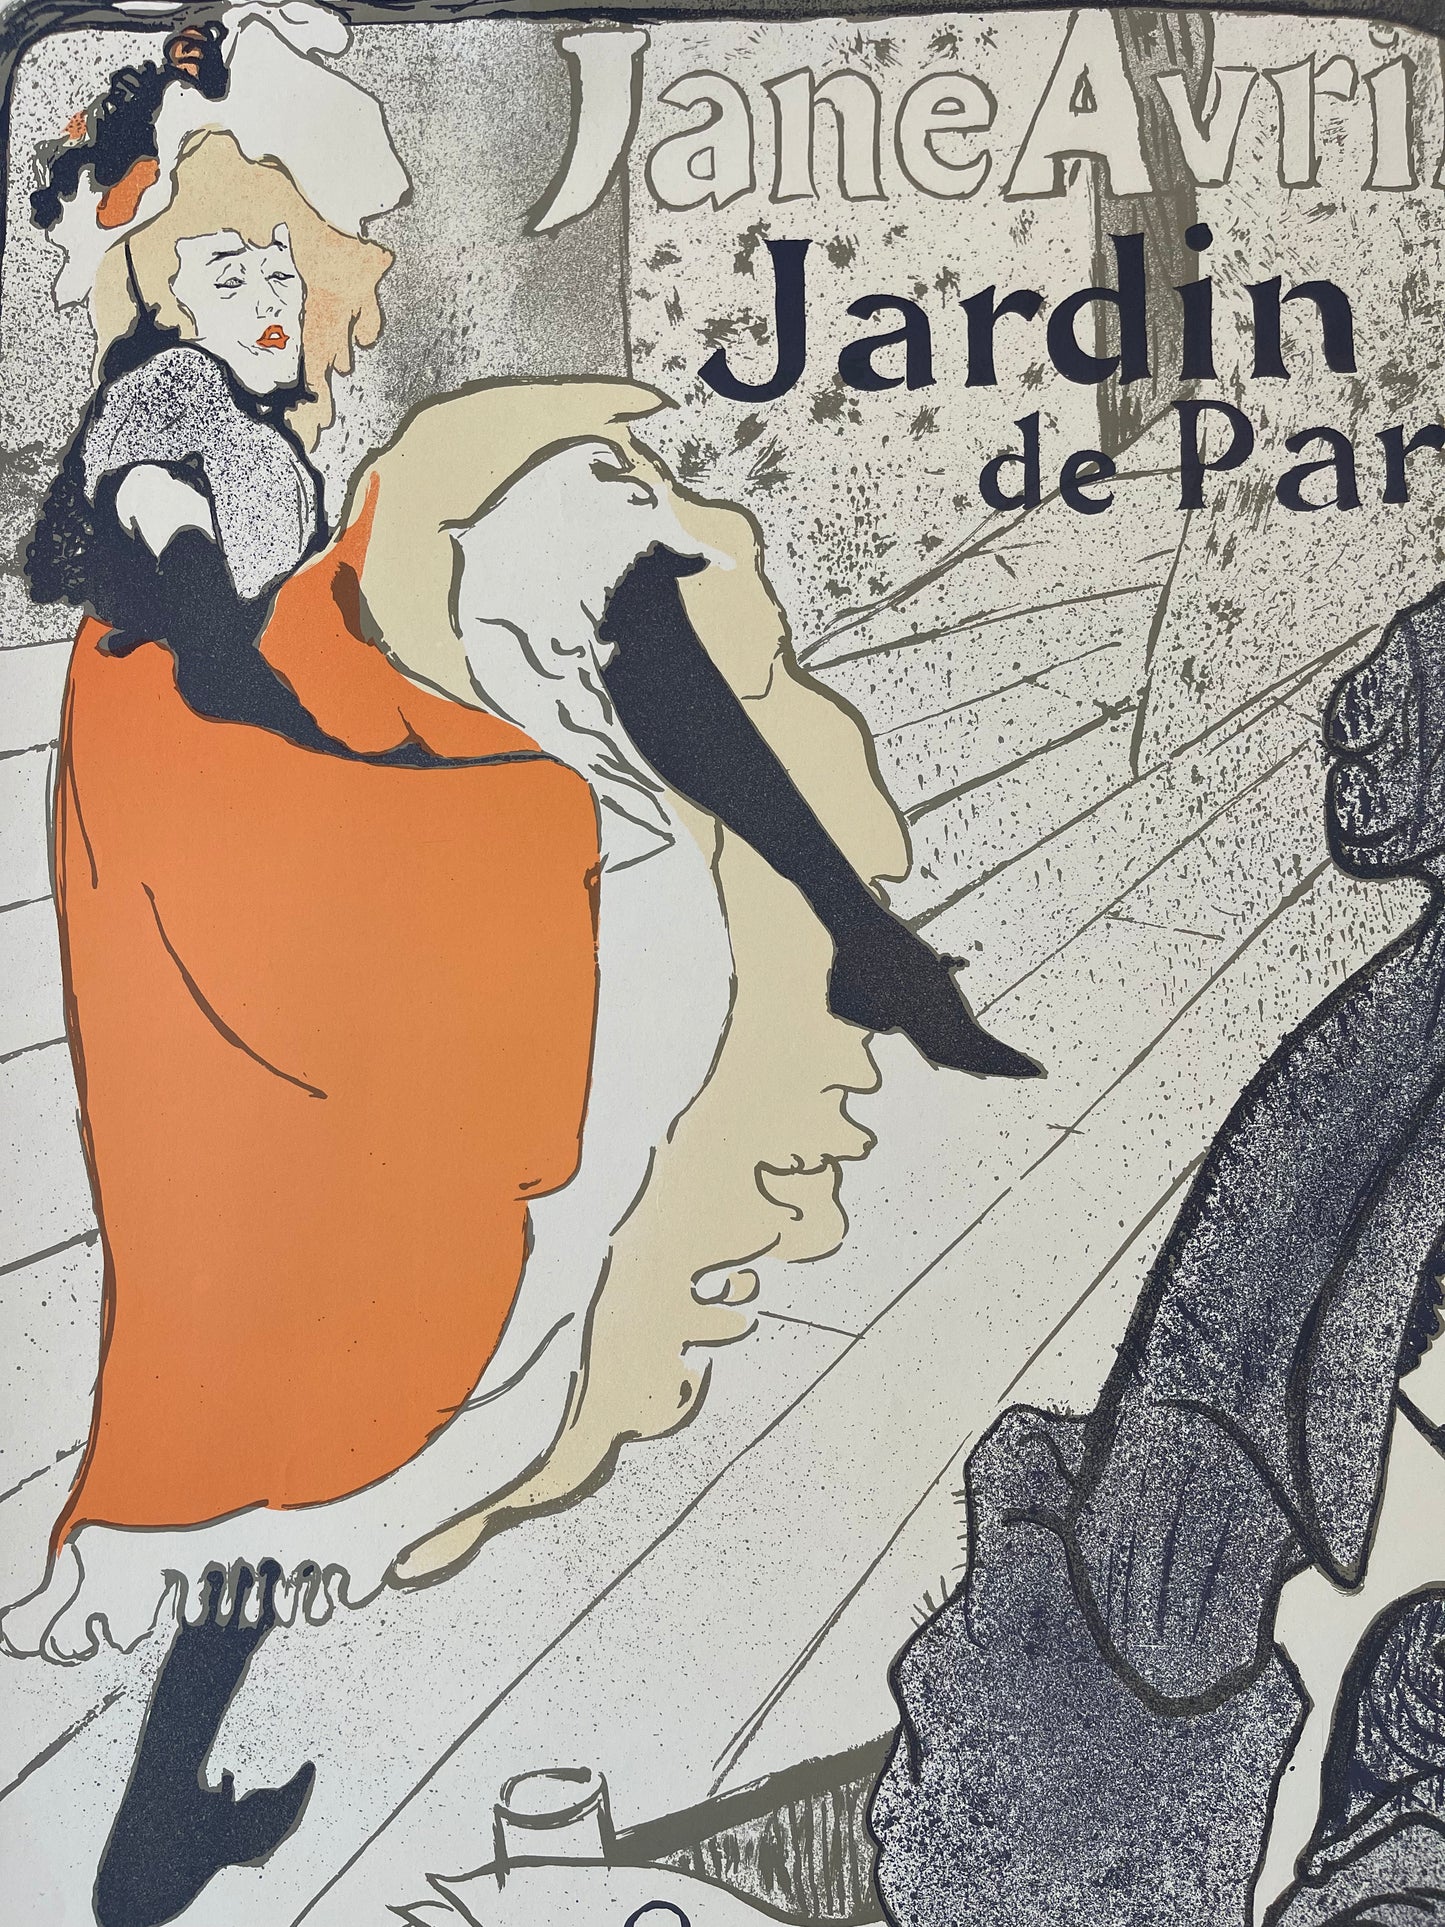 Jane Avril: Jardin de Paris by Henri de Toulouse-Lautrec